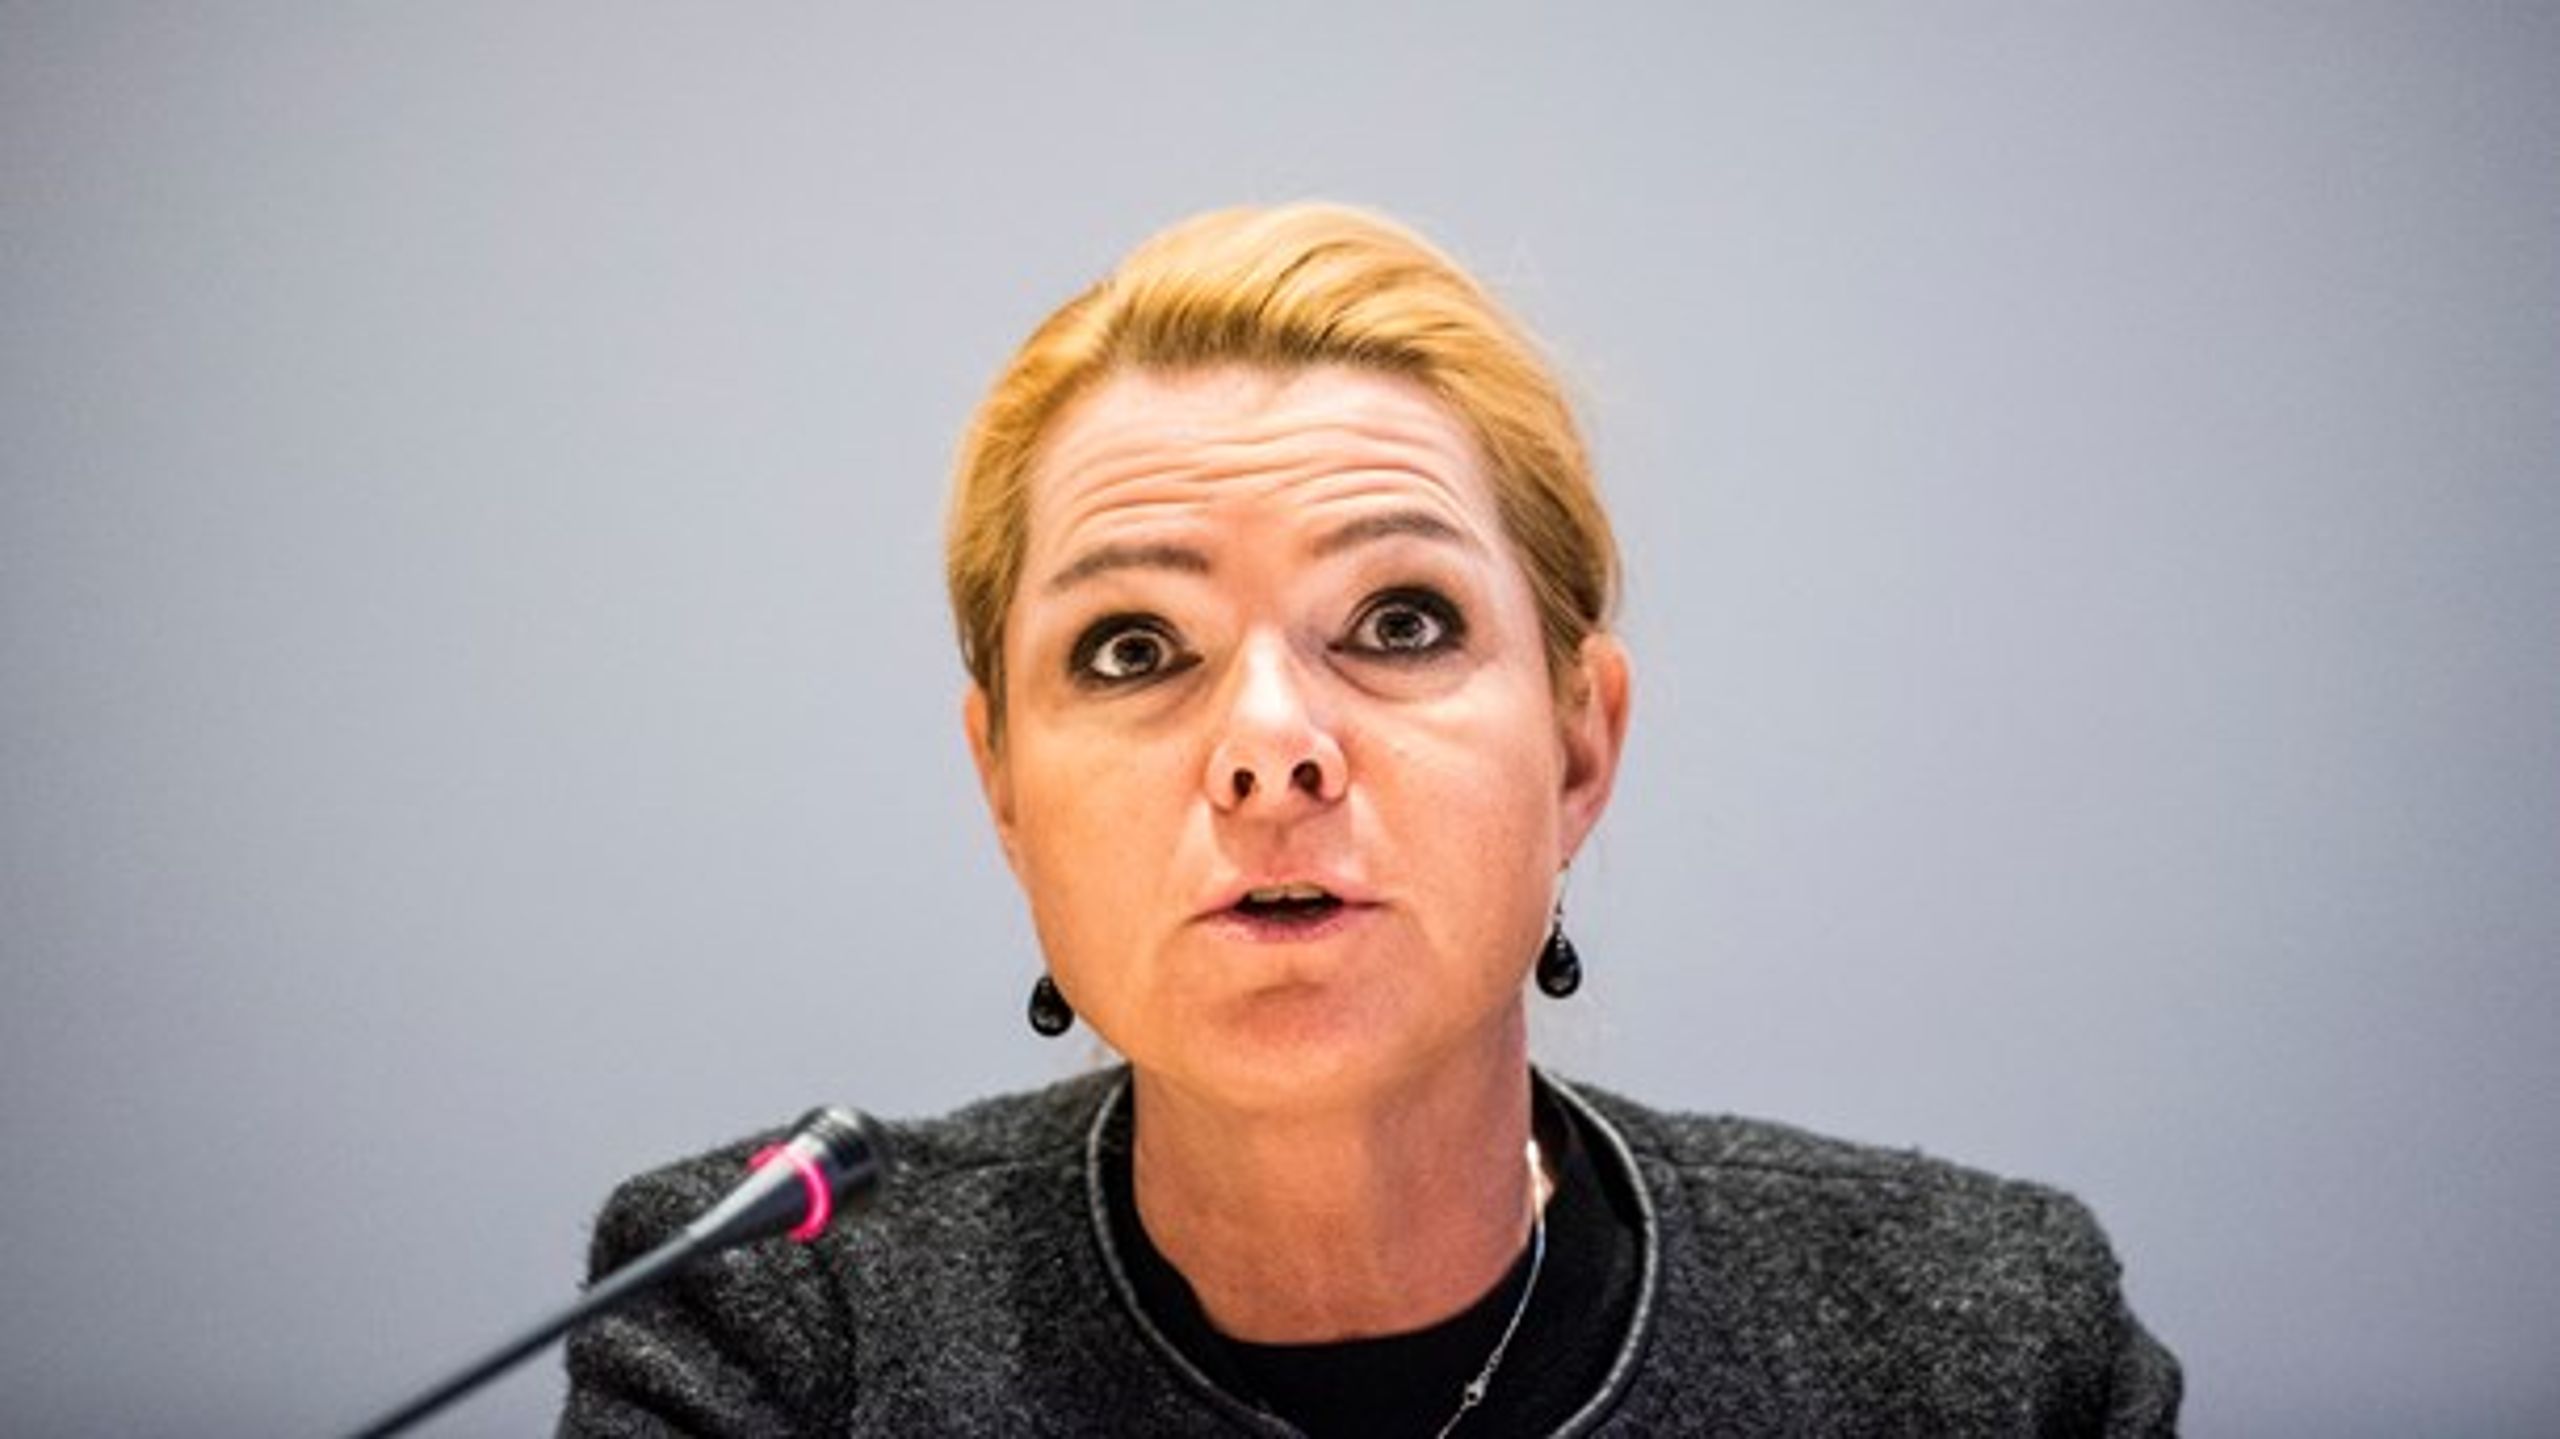 Inger Støjbergs ministerium har ingen intentioner om at integrere udlændinge i Danmark, mener Signe Hermann.